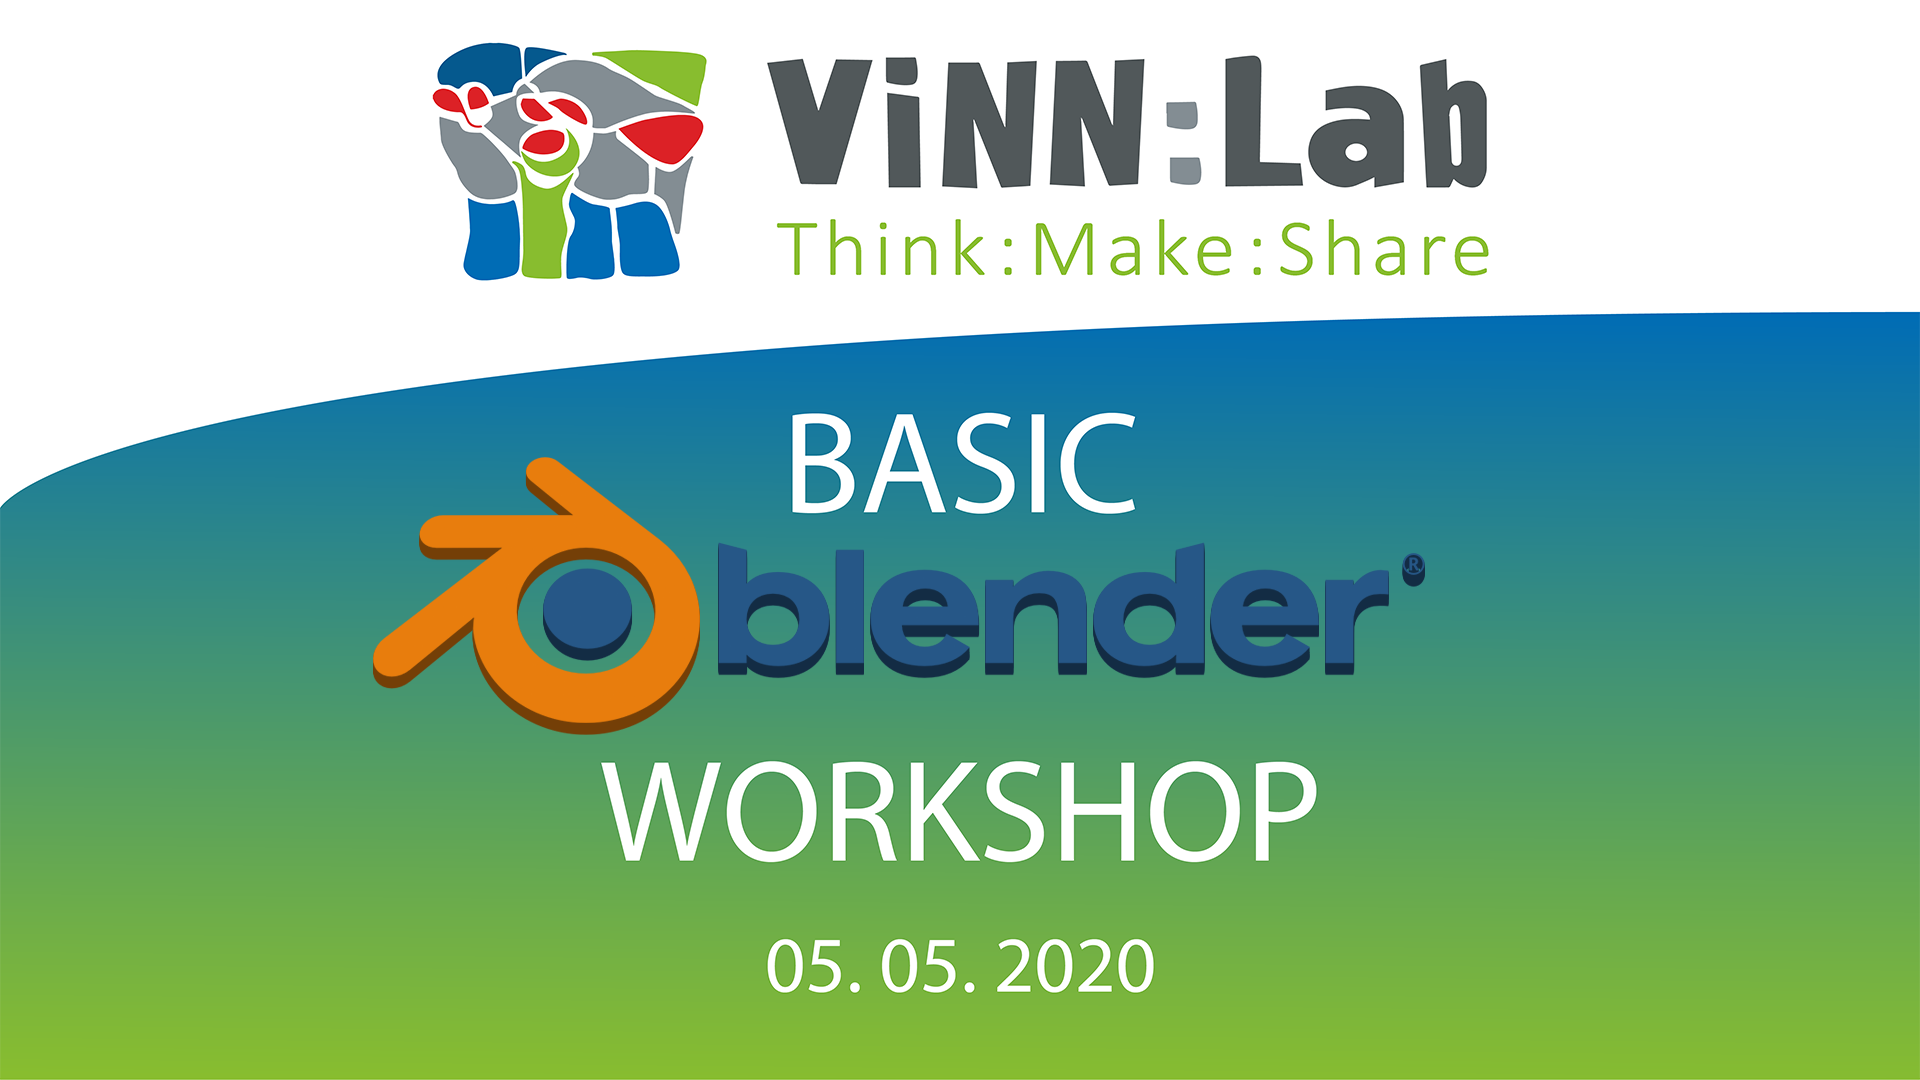 ViNN:Lab - Basic Blender Workshop @ home - Online Workshop